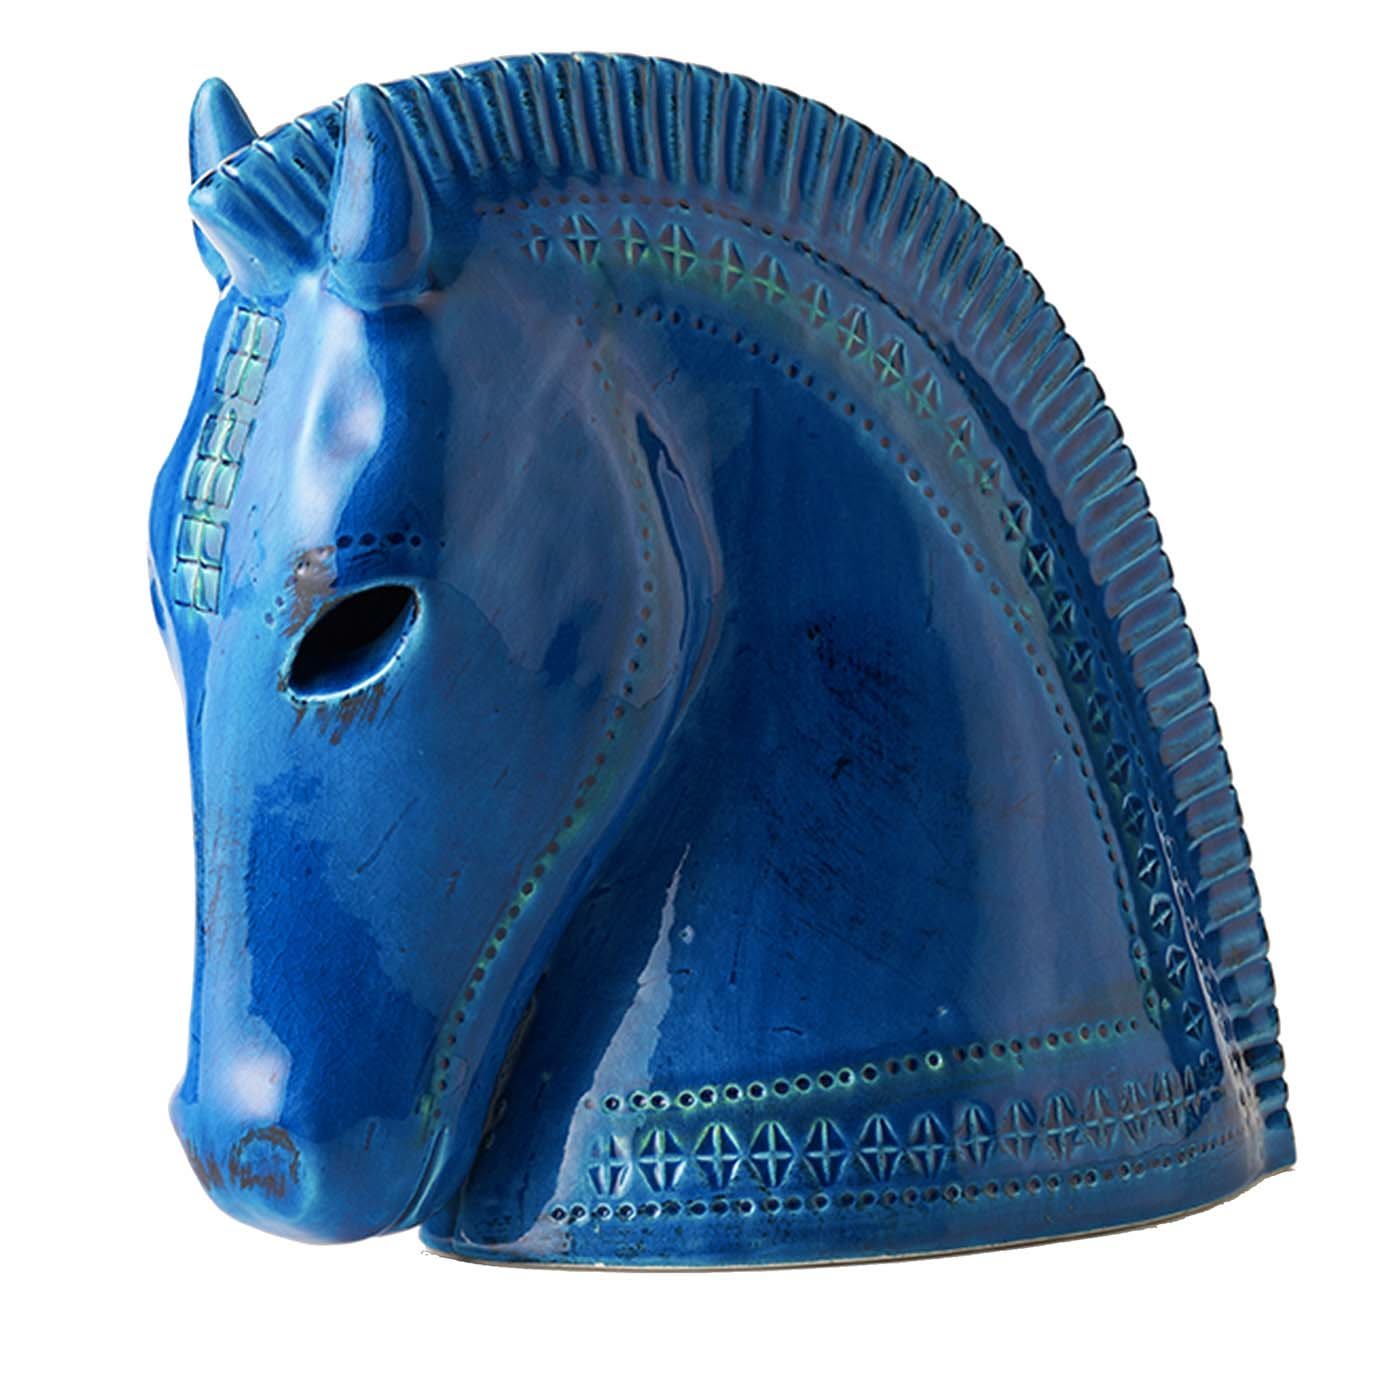 Rimini Blu Horse Head Figurine by Aldo Londi - Bitossi Ceramiche